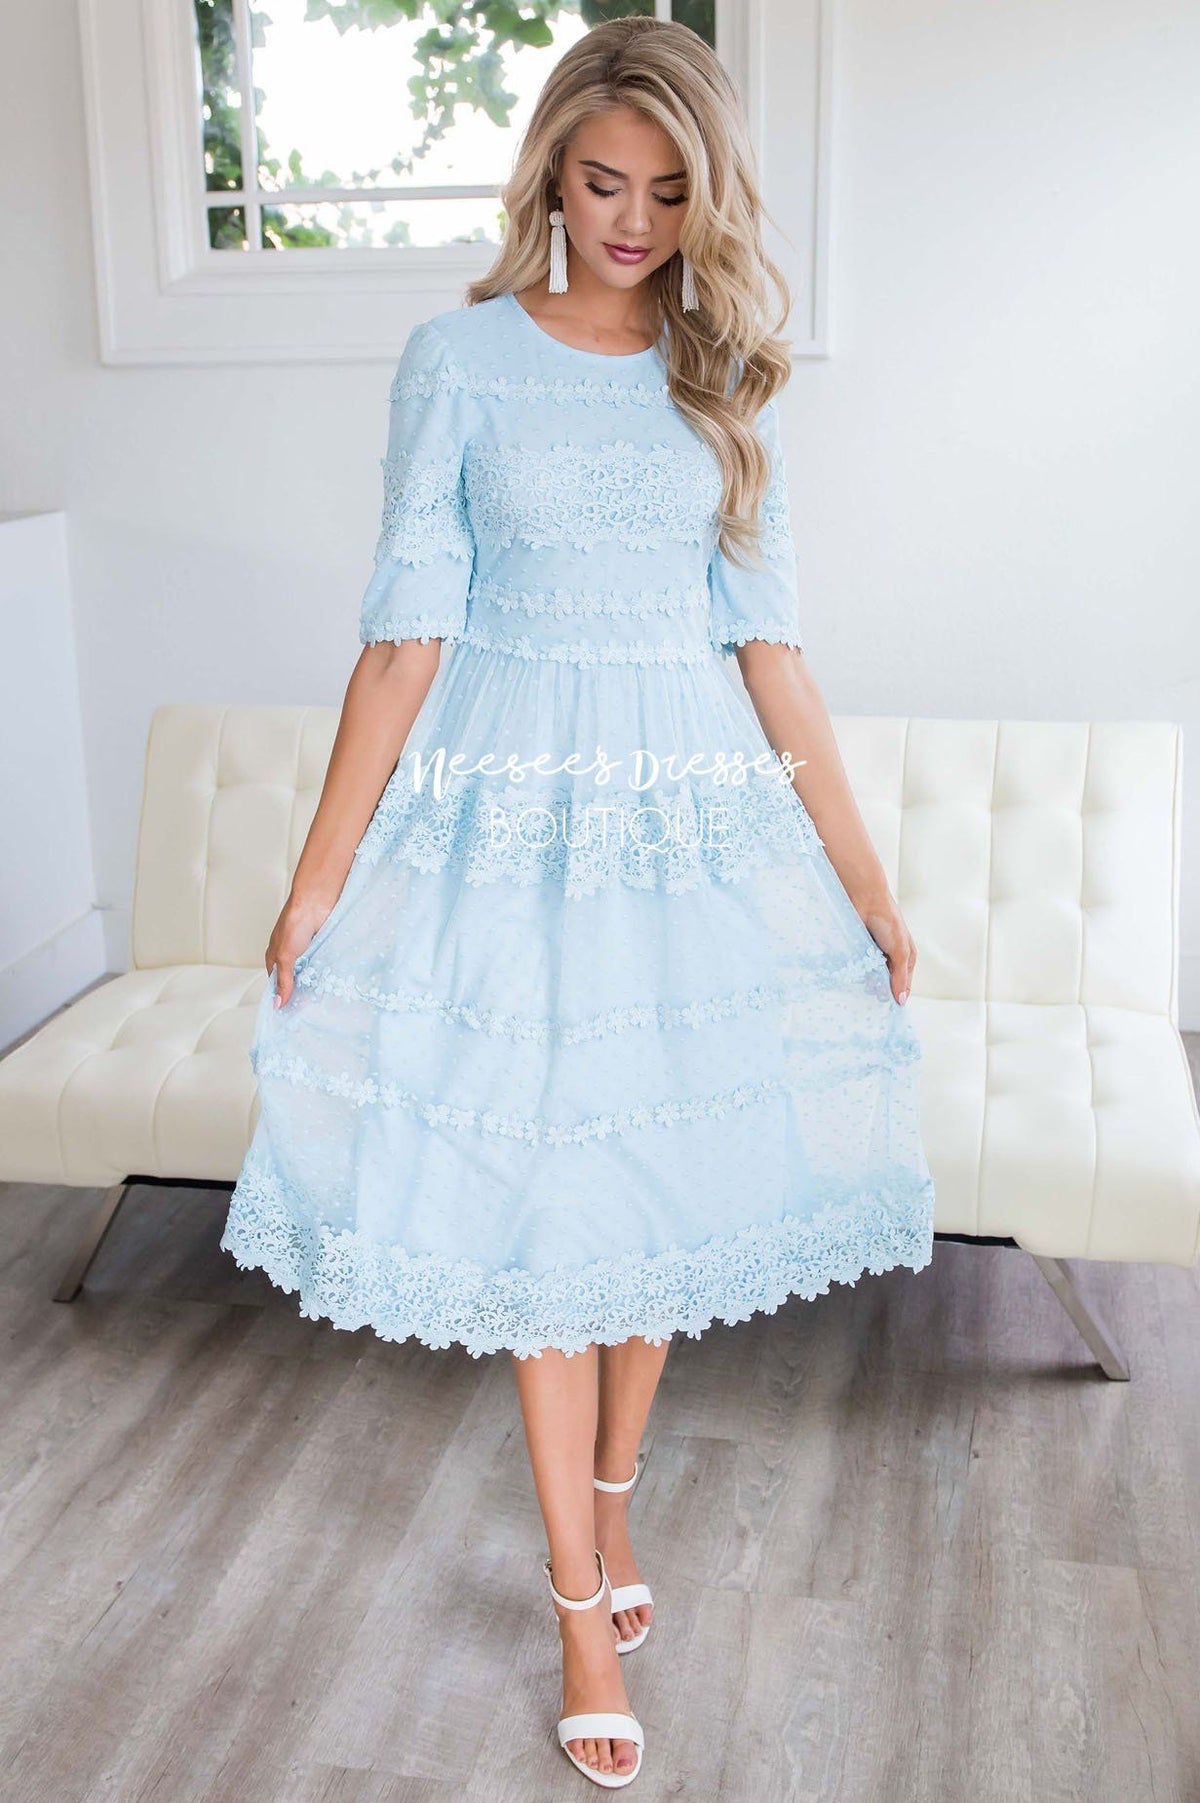 Baby Blue Floral Lace Modest Church Dress | Modest Bridesmaids Dresses ...